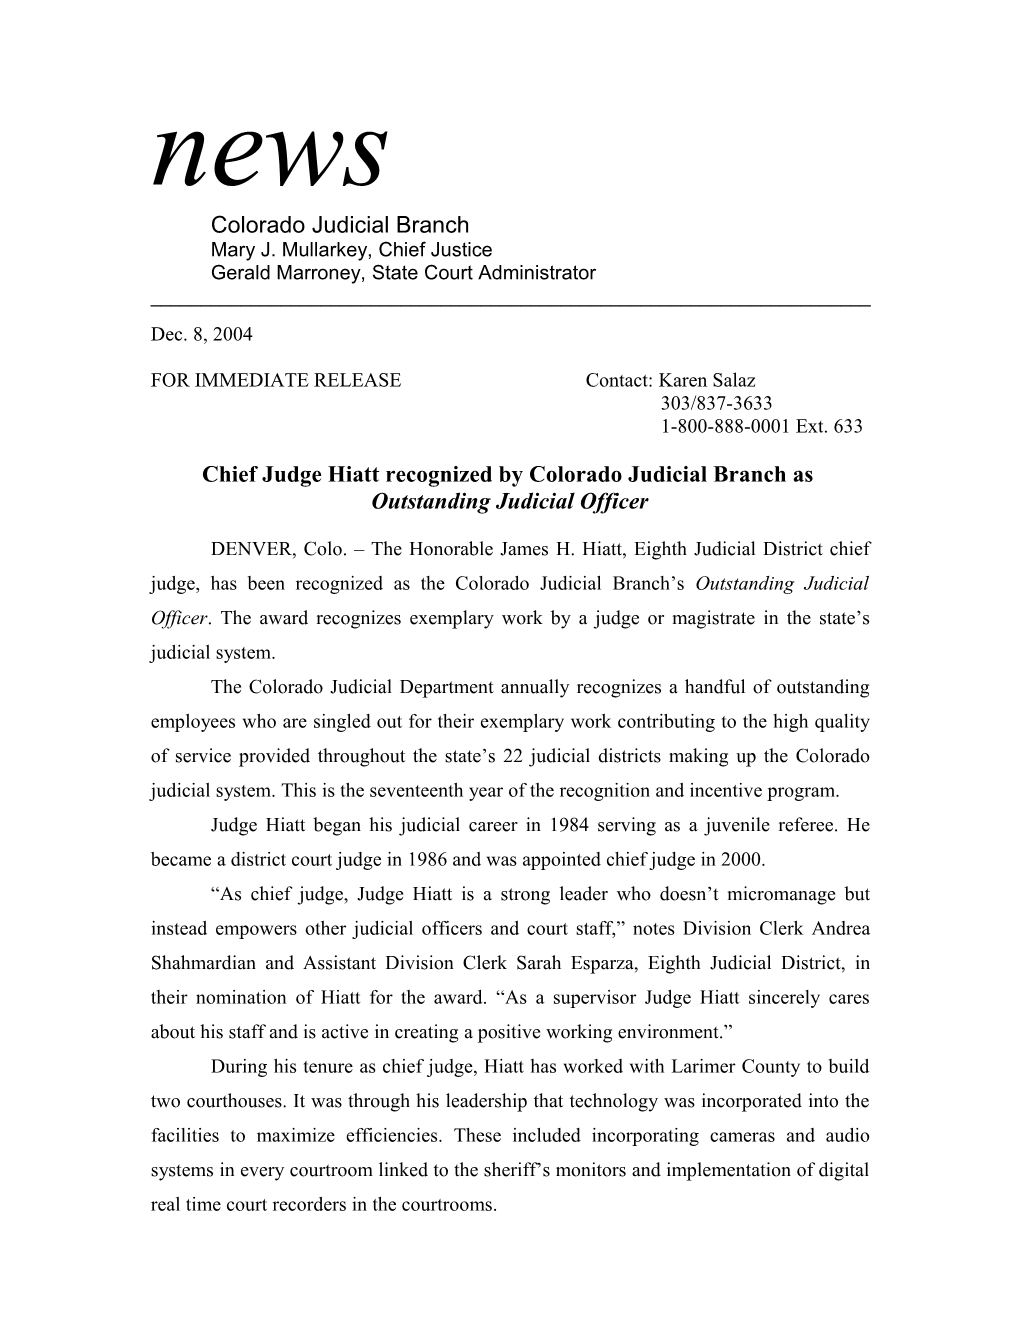 Chief Judge Hiatt Recognized by Colorado Judicial Branch As